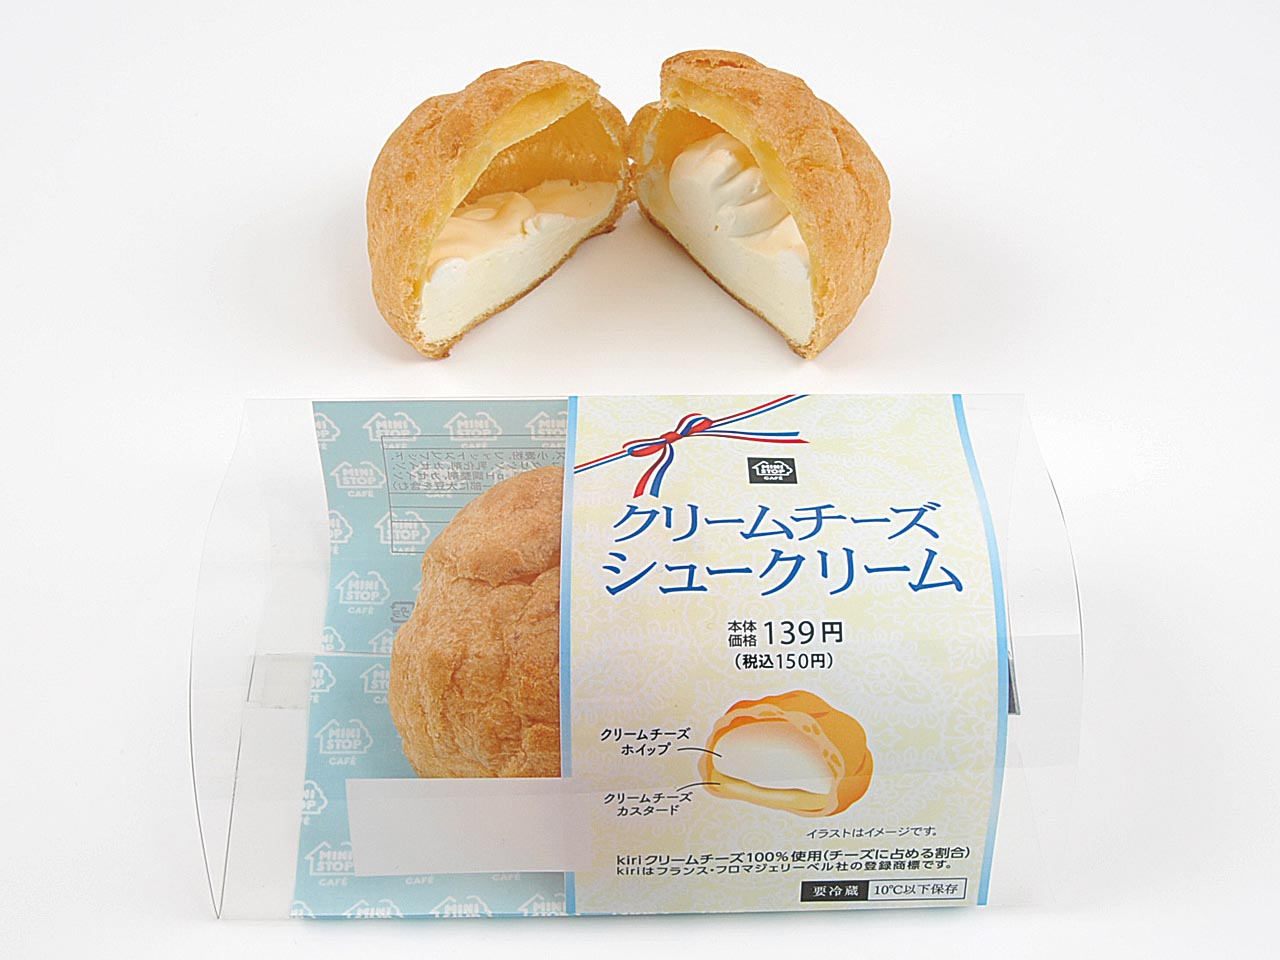 チーズ好き必見🧀💕クリーミーな味わいがたまらない！kiri(R)クリームチーズを使用したスイーツを、ミニストップで限定発売🌟